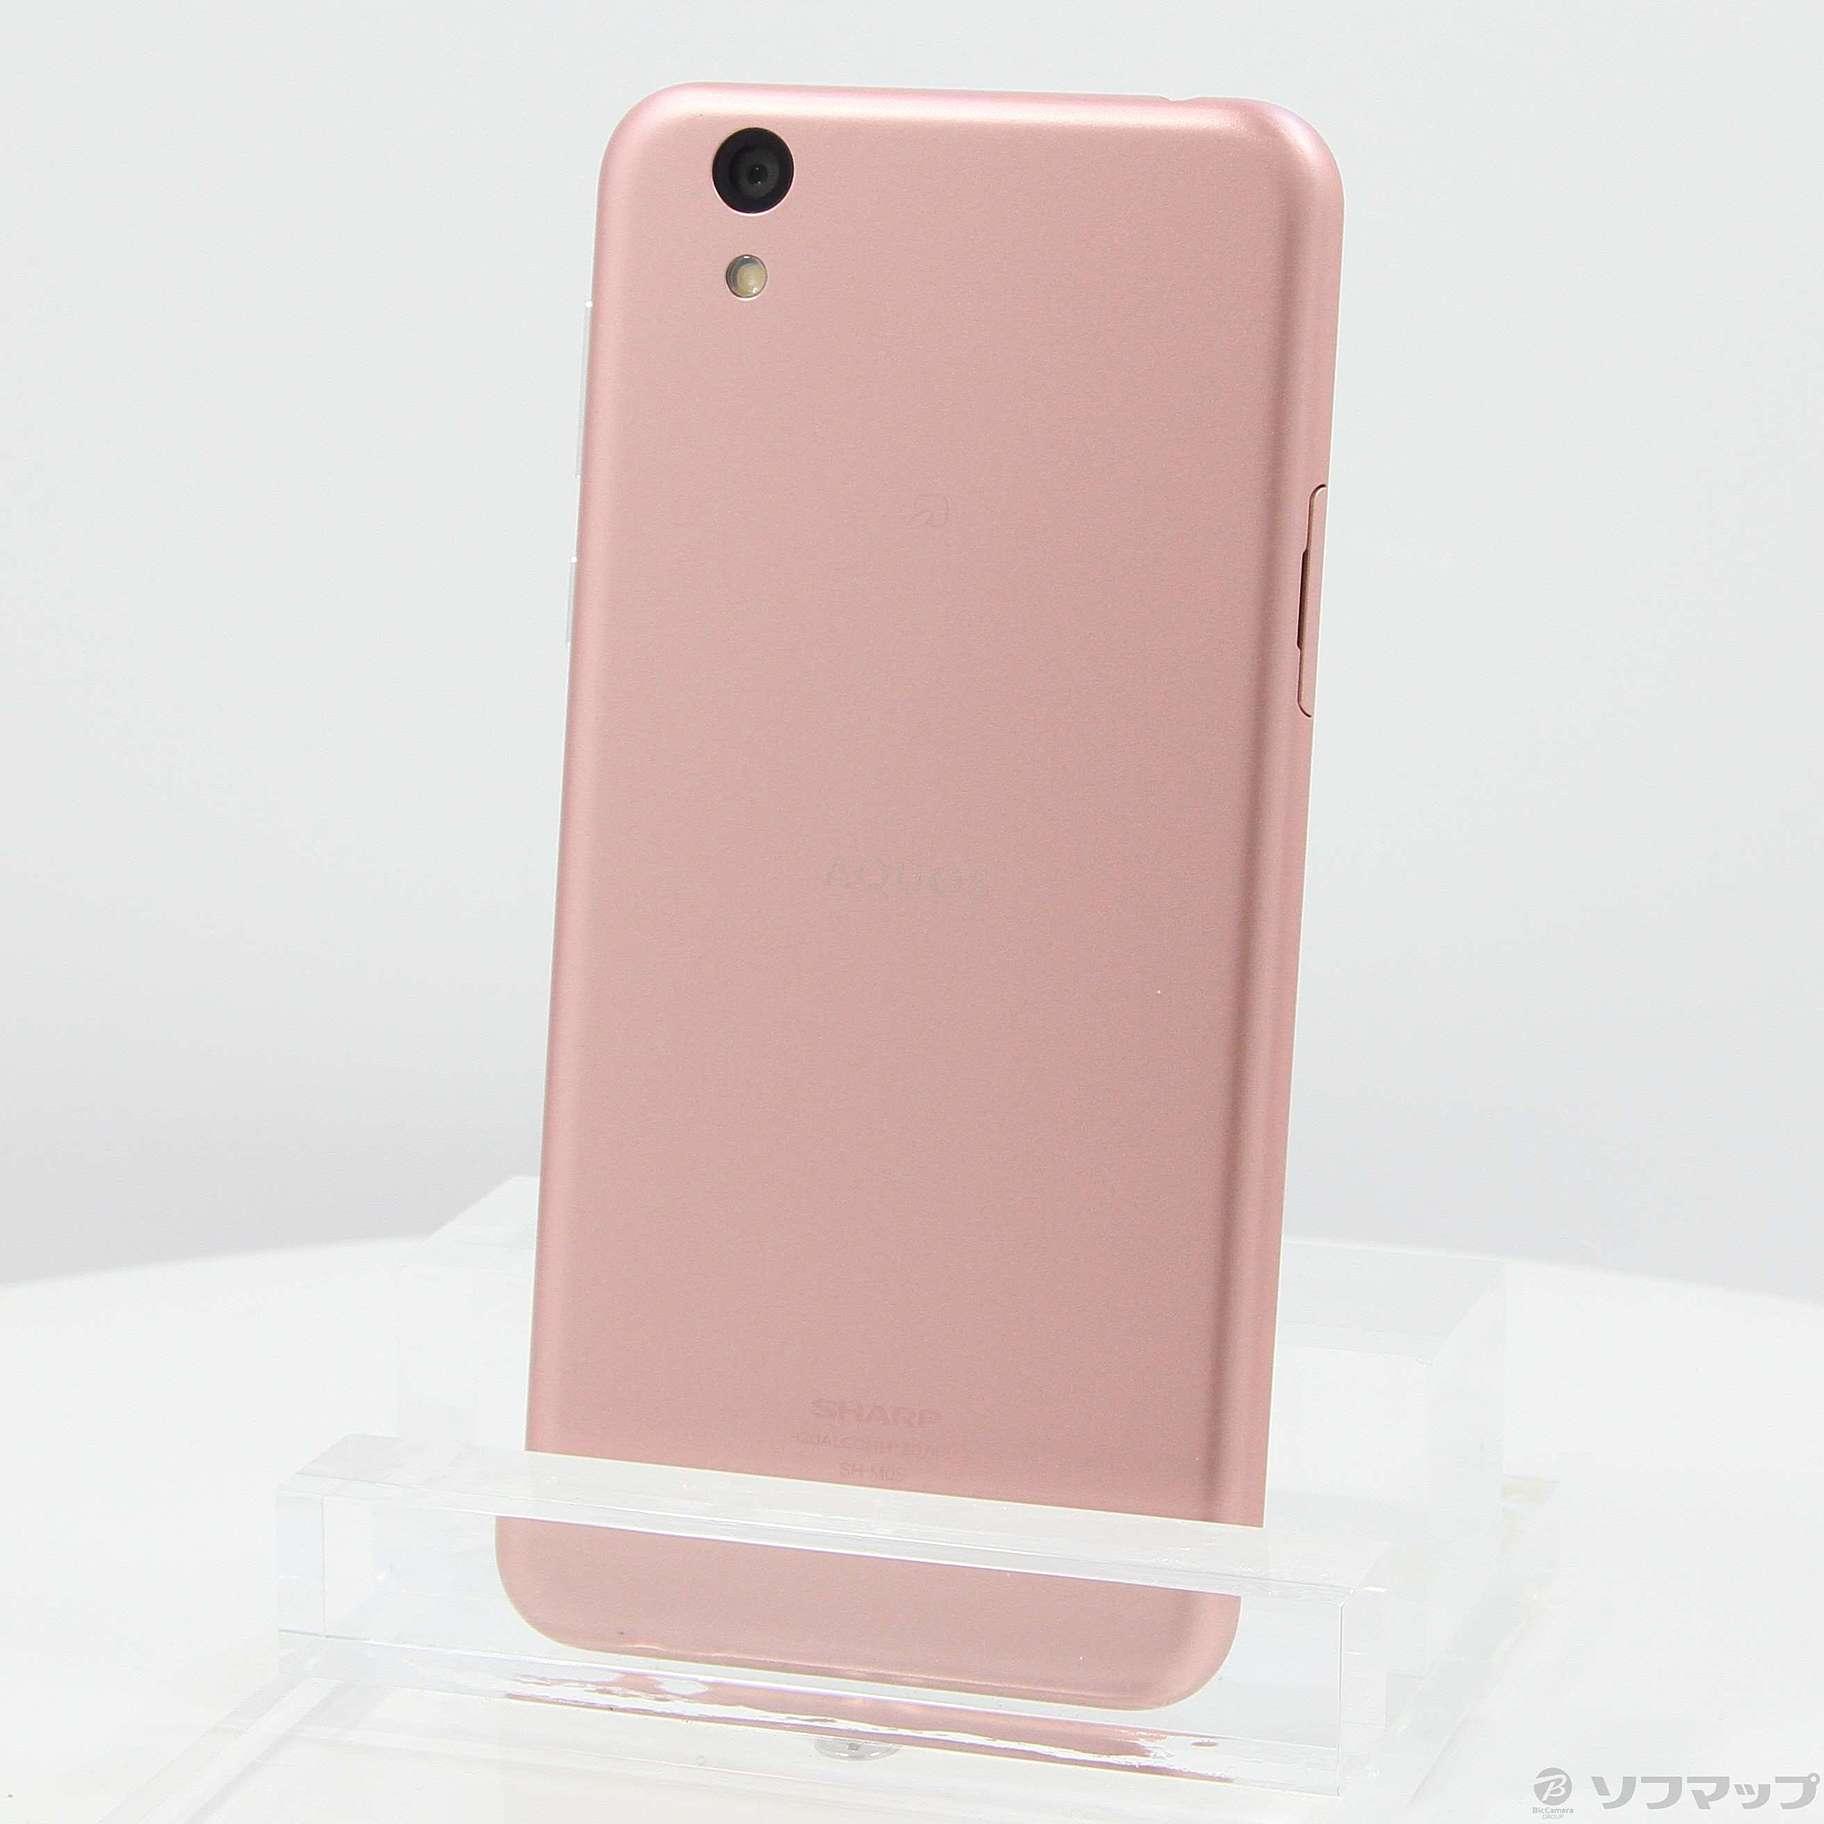 スマートフォン/携帯電話AQUOS sense lite (SH-M05) Pink - スマートフォン本体